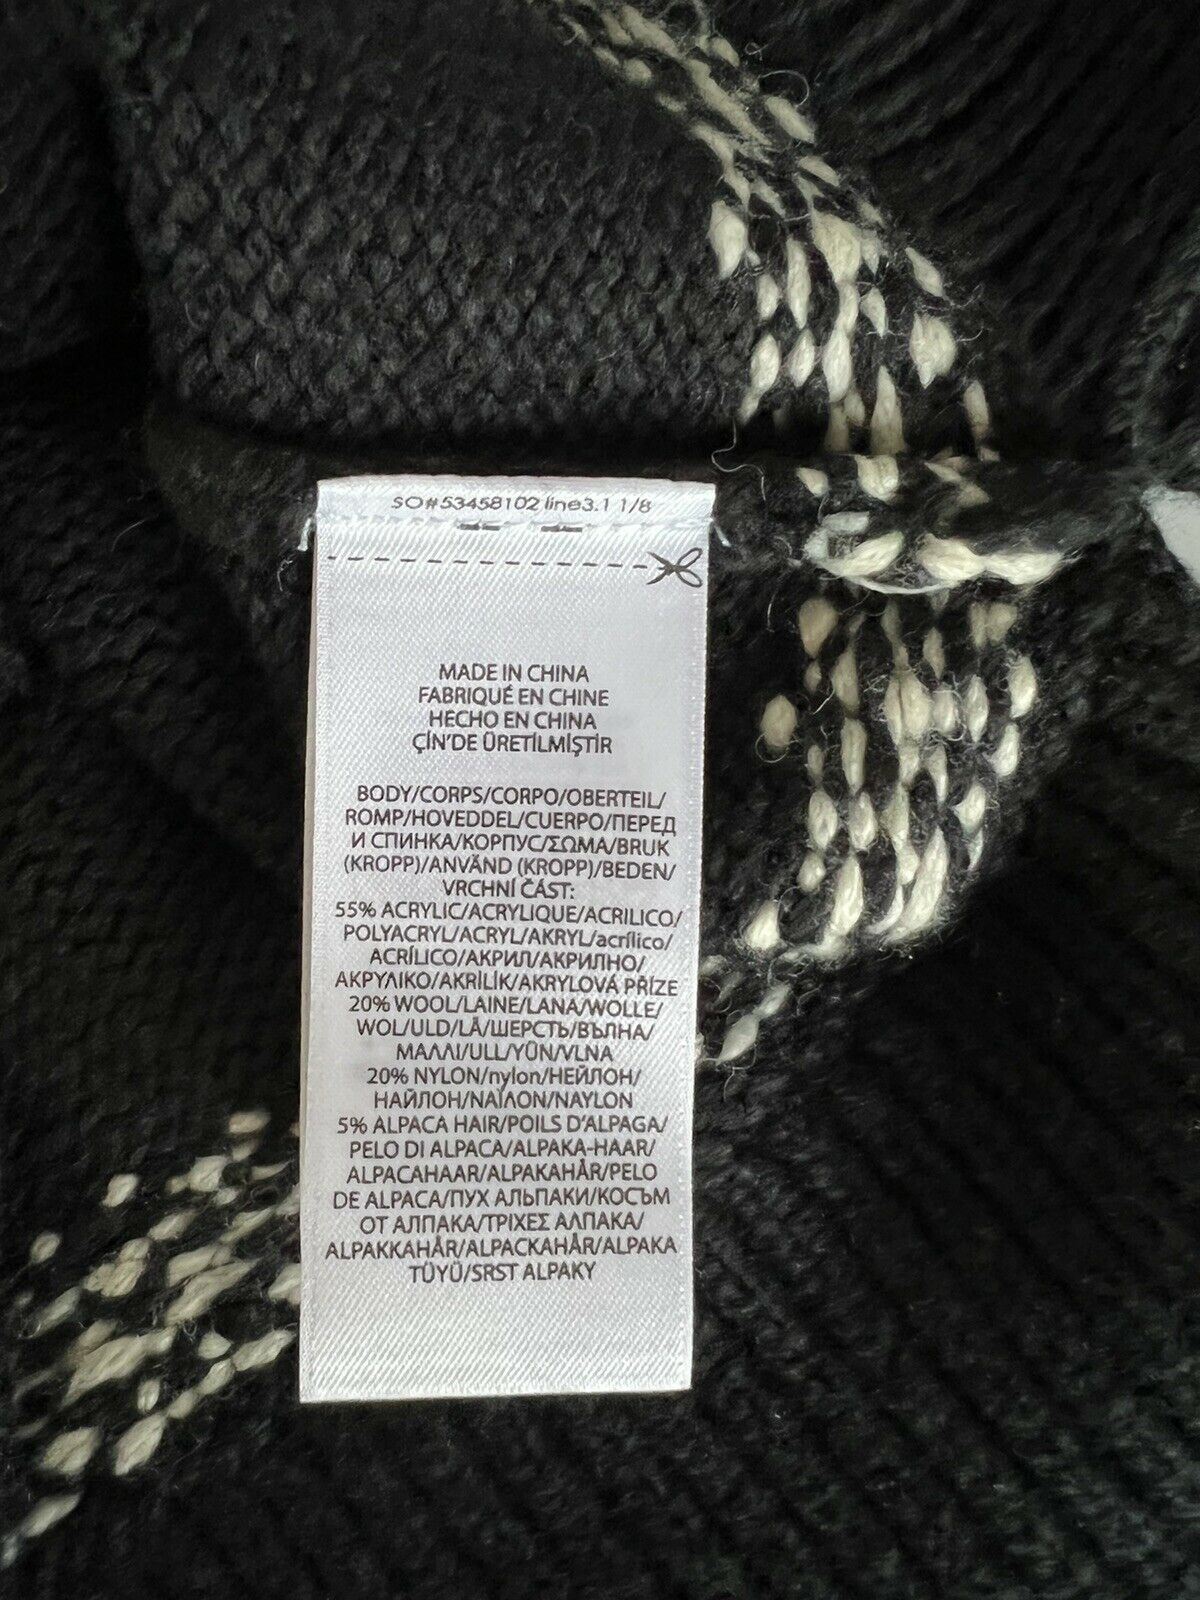 Neu mit Etikett: 145 $ Polo Ralph Lauren Mädchen-Pullover in Schwarz, Snow Soft, Größe S (7)